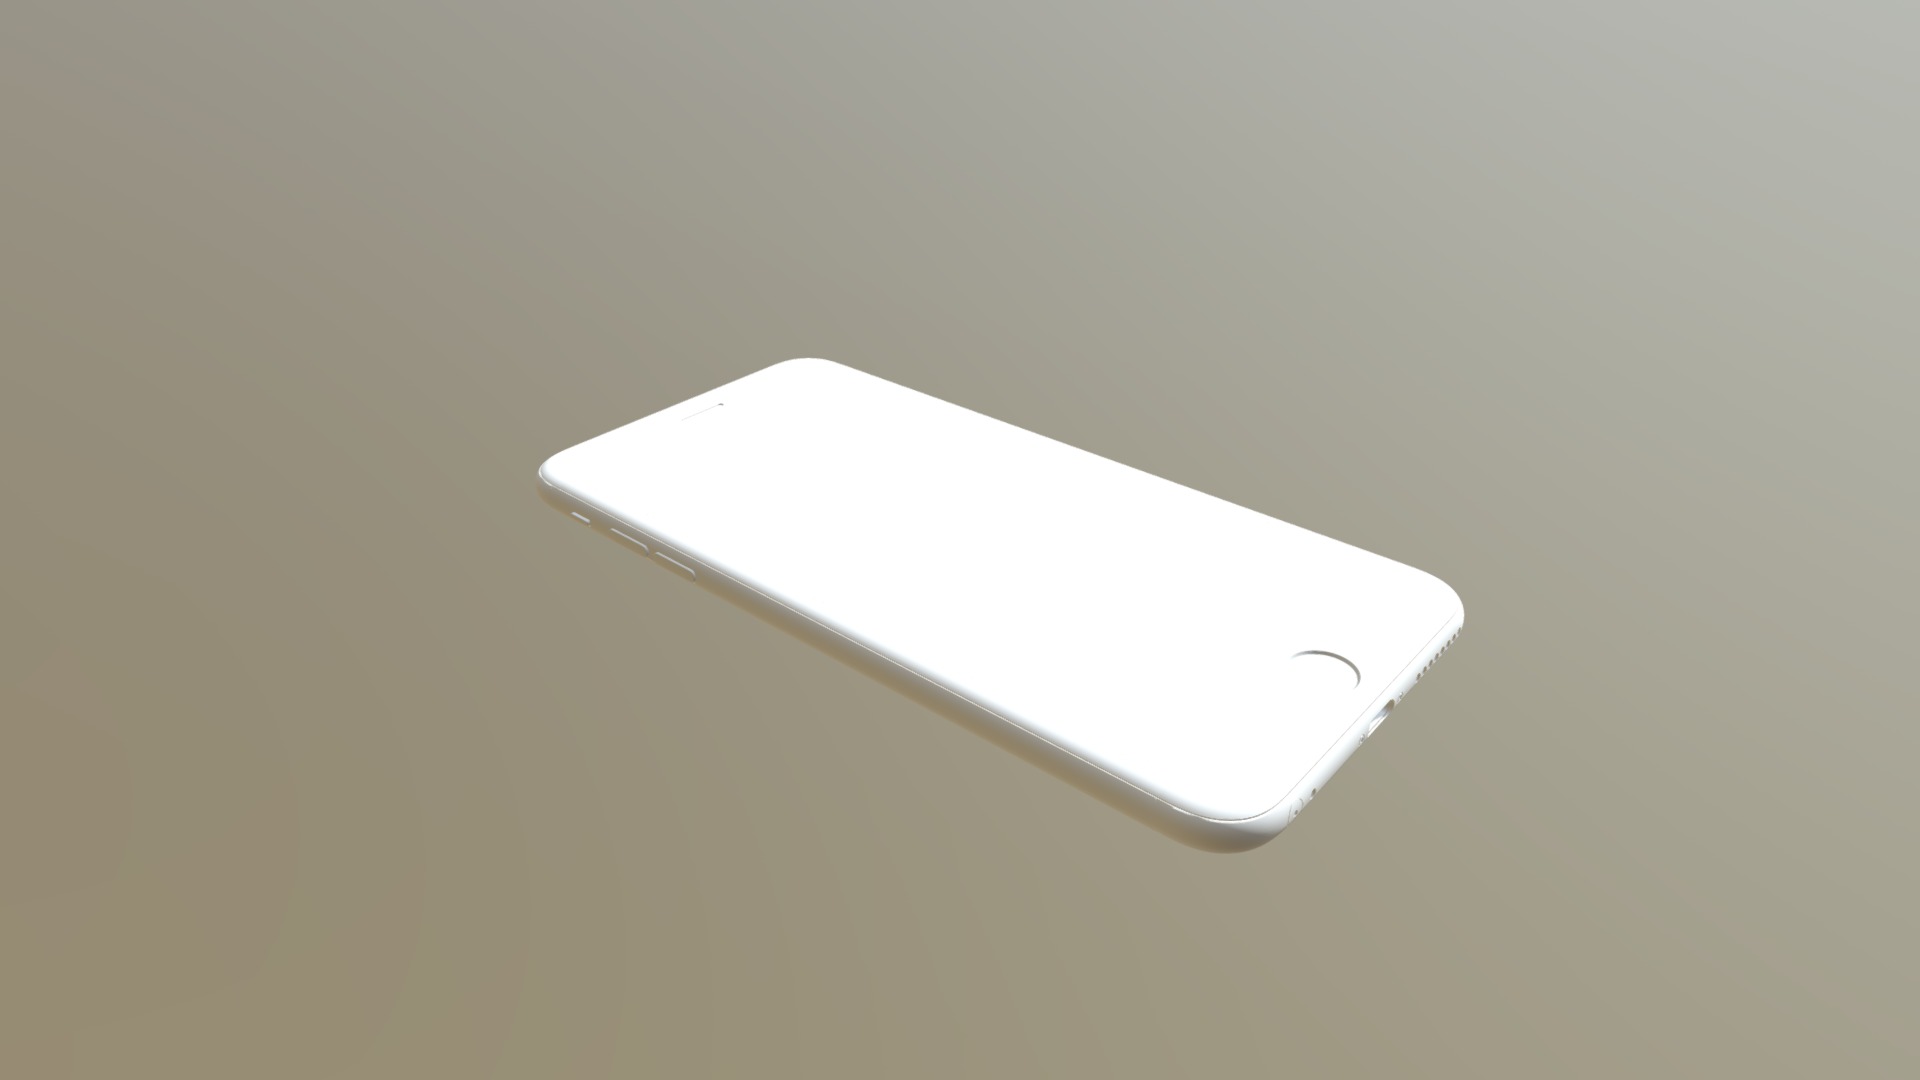 3D model iPhone 6s Plus – original Apple dimensions - This is a 3D model of the iPhone 6s Plus - original Apple dimensions. The 3D model is about a white cell phone.